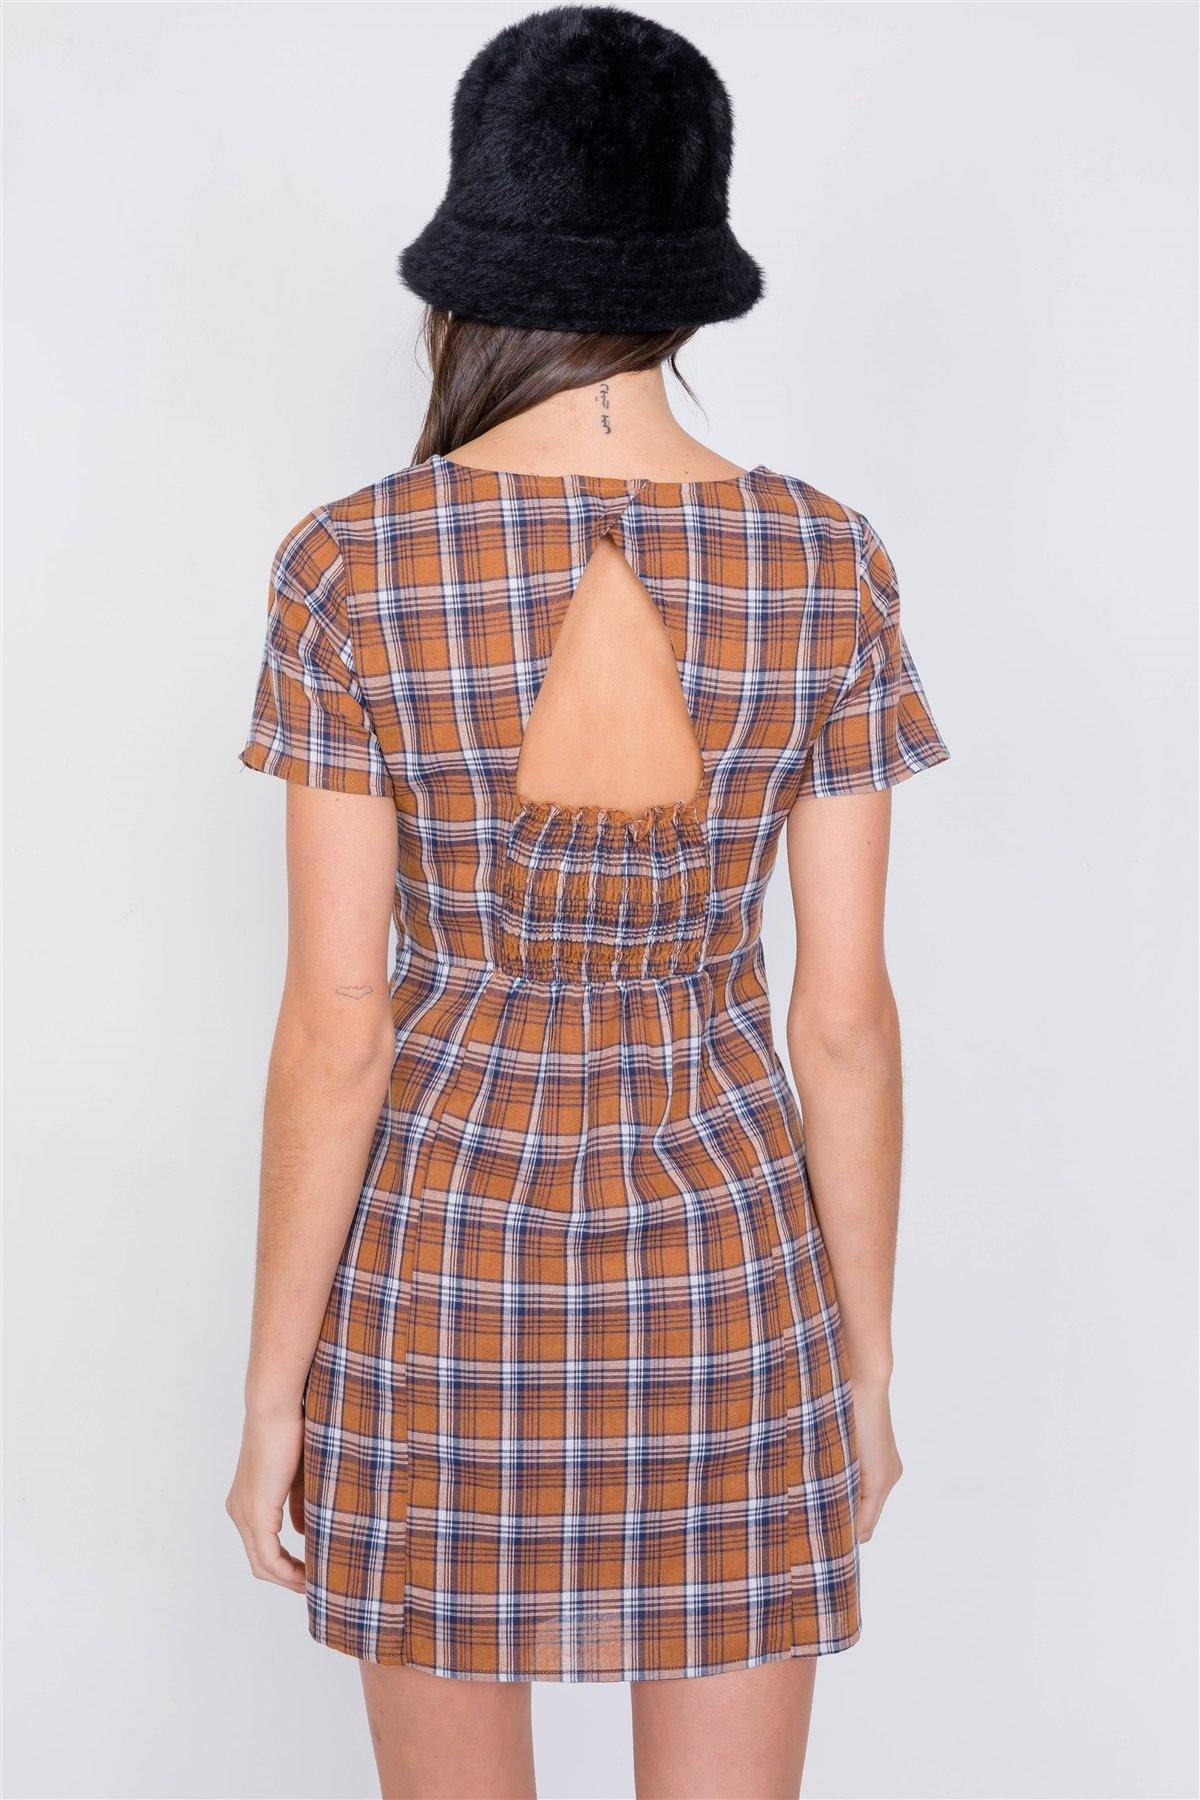 Brown Multi Checkered Stripe Casual Open Back Vintage Mini Dress - Pearlara